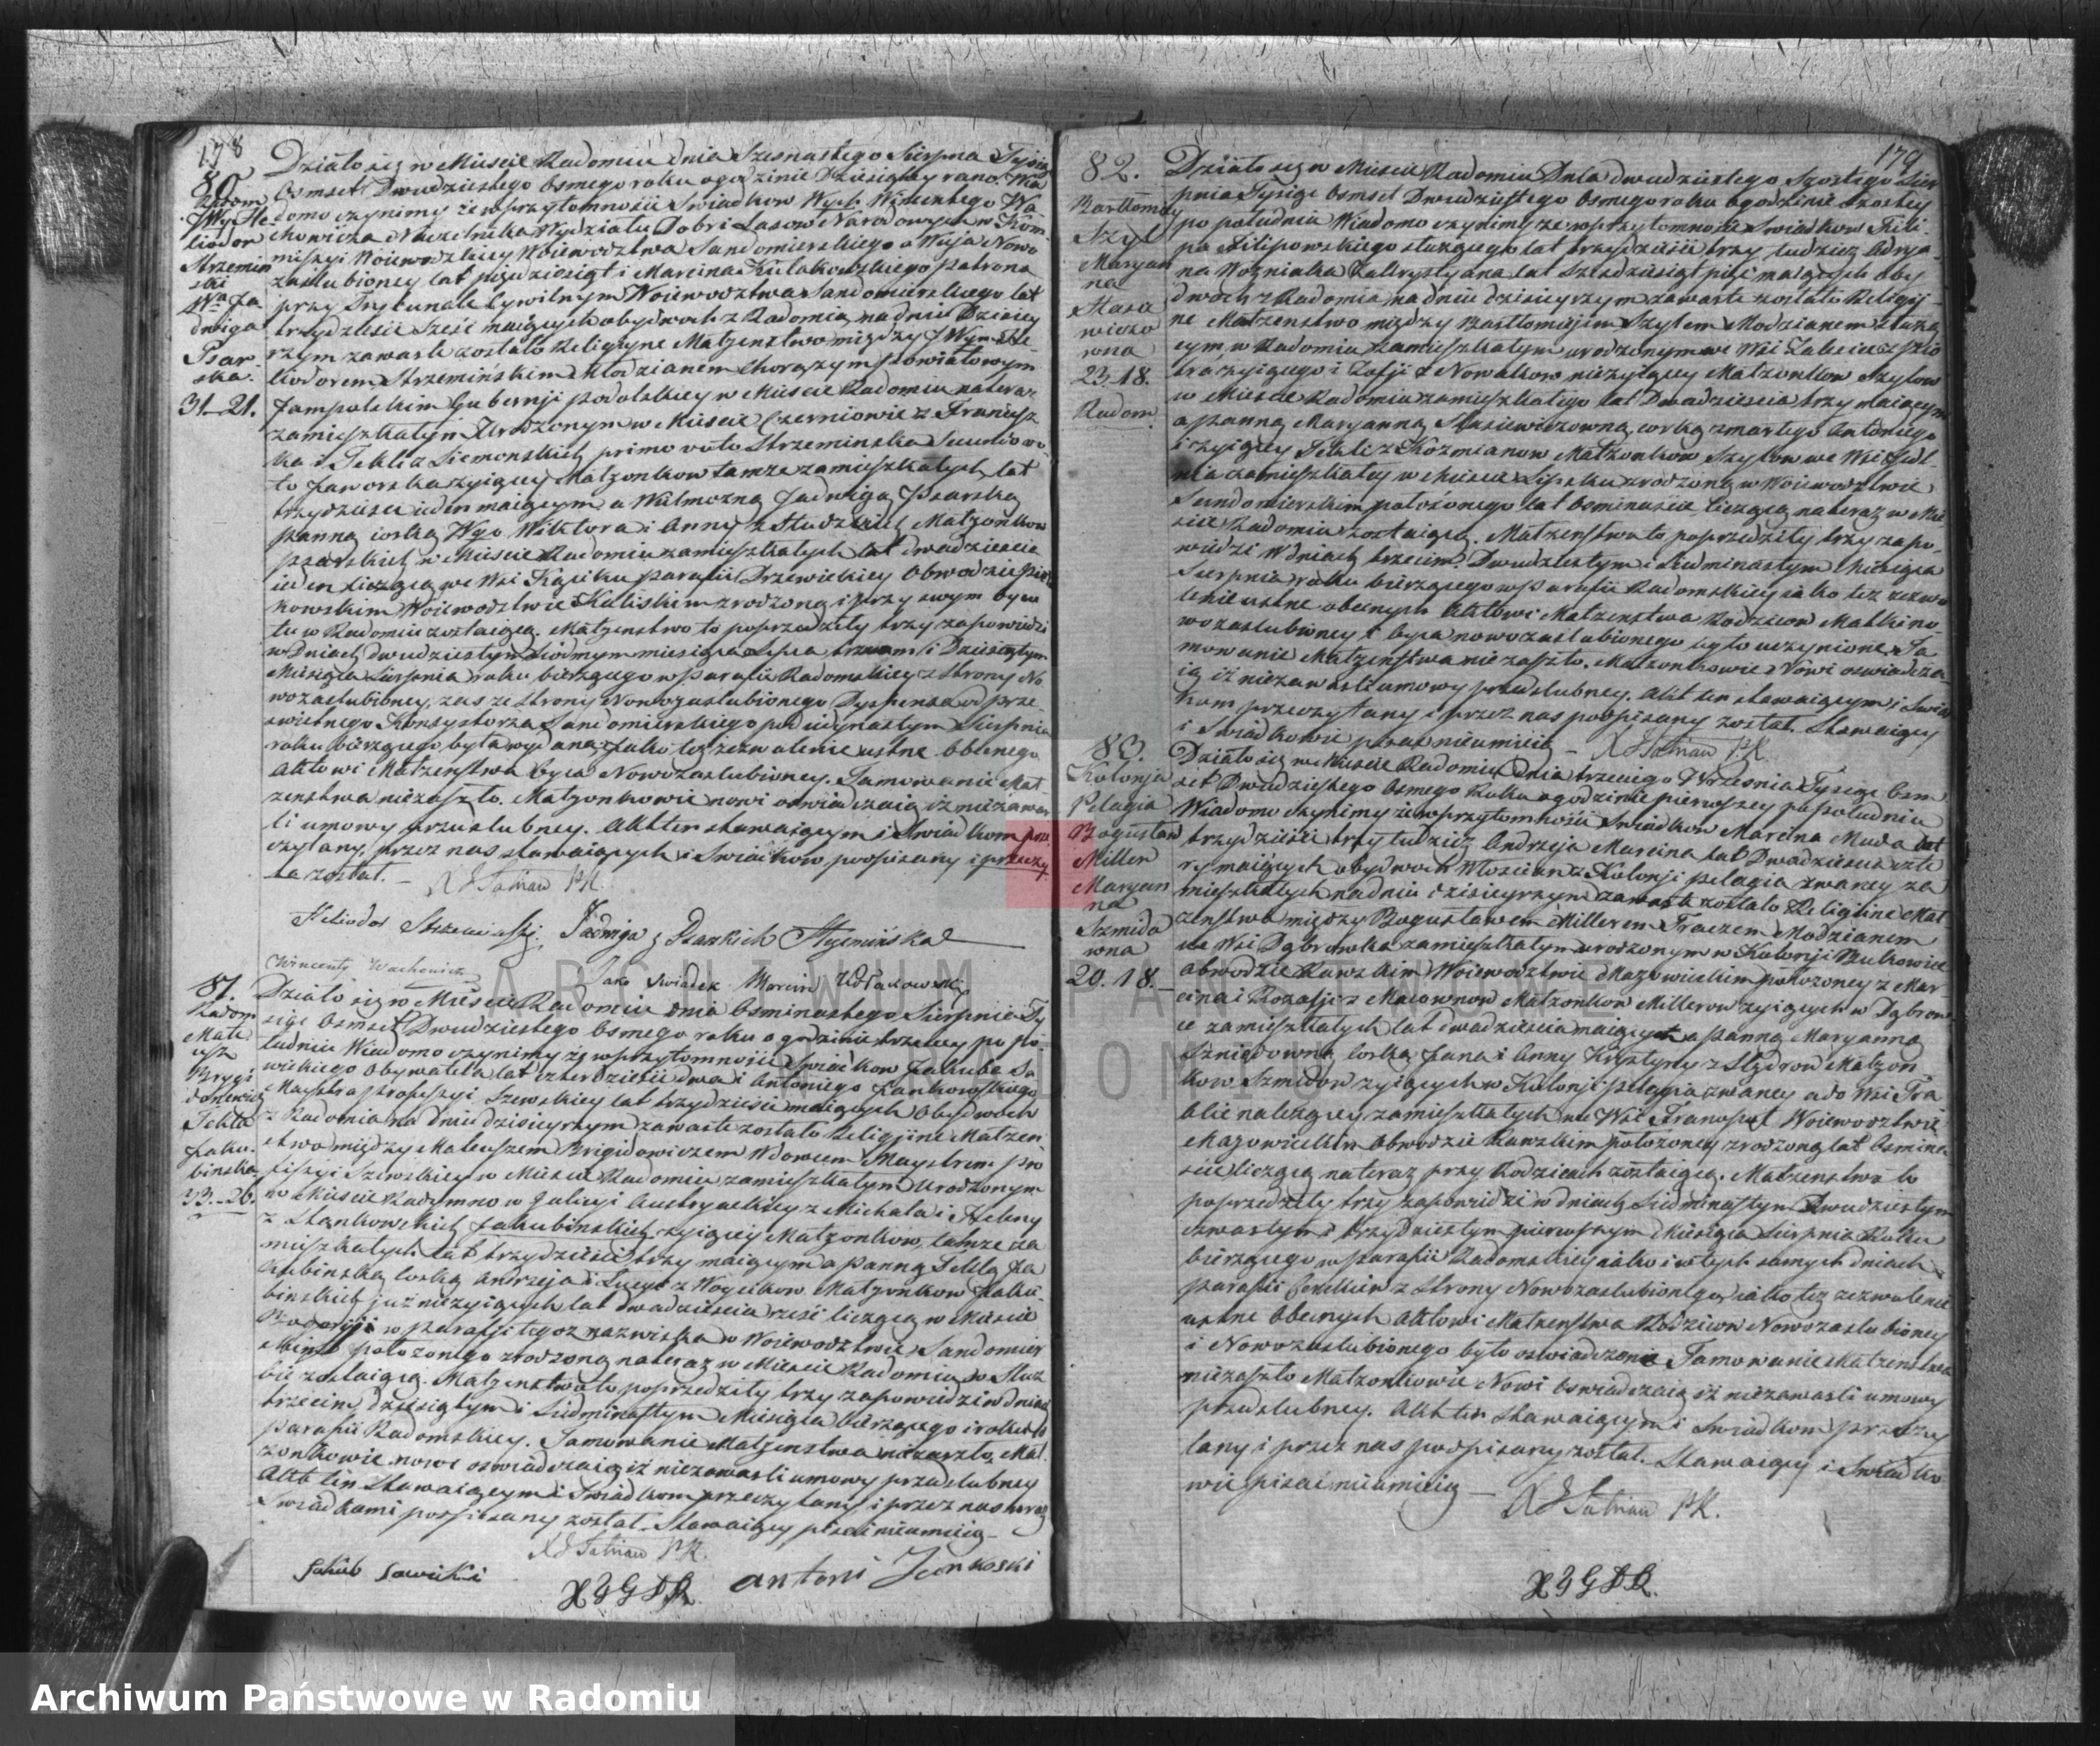 Skan z jednostki: Duplikat parafij Katolickiej Radom z r. 1828